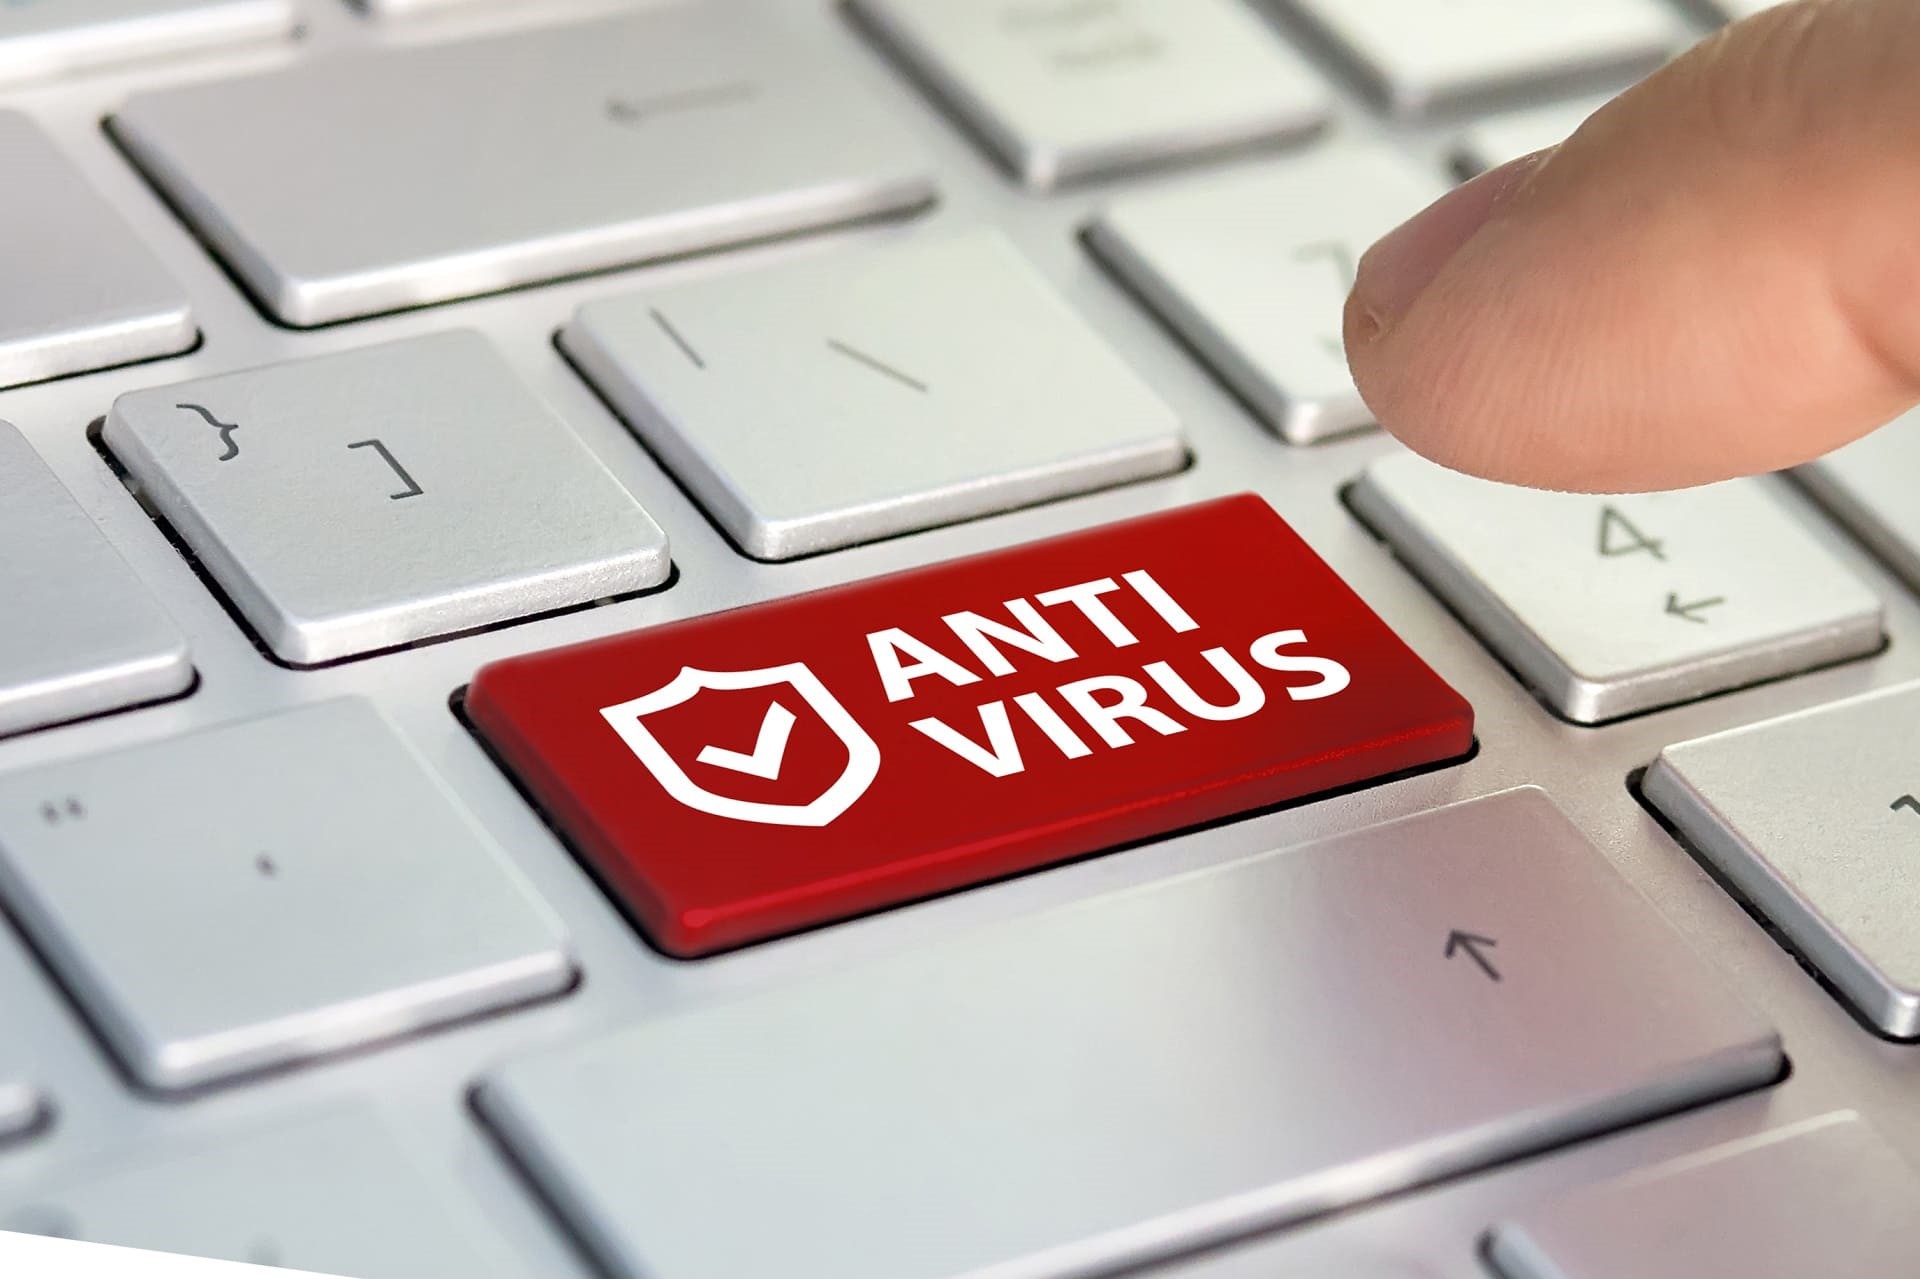 antivirus-yazilimi-nedir-faydalari-nelerdir-8989124211-1x-1-false-false.jpg